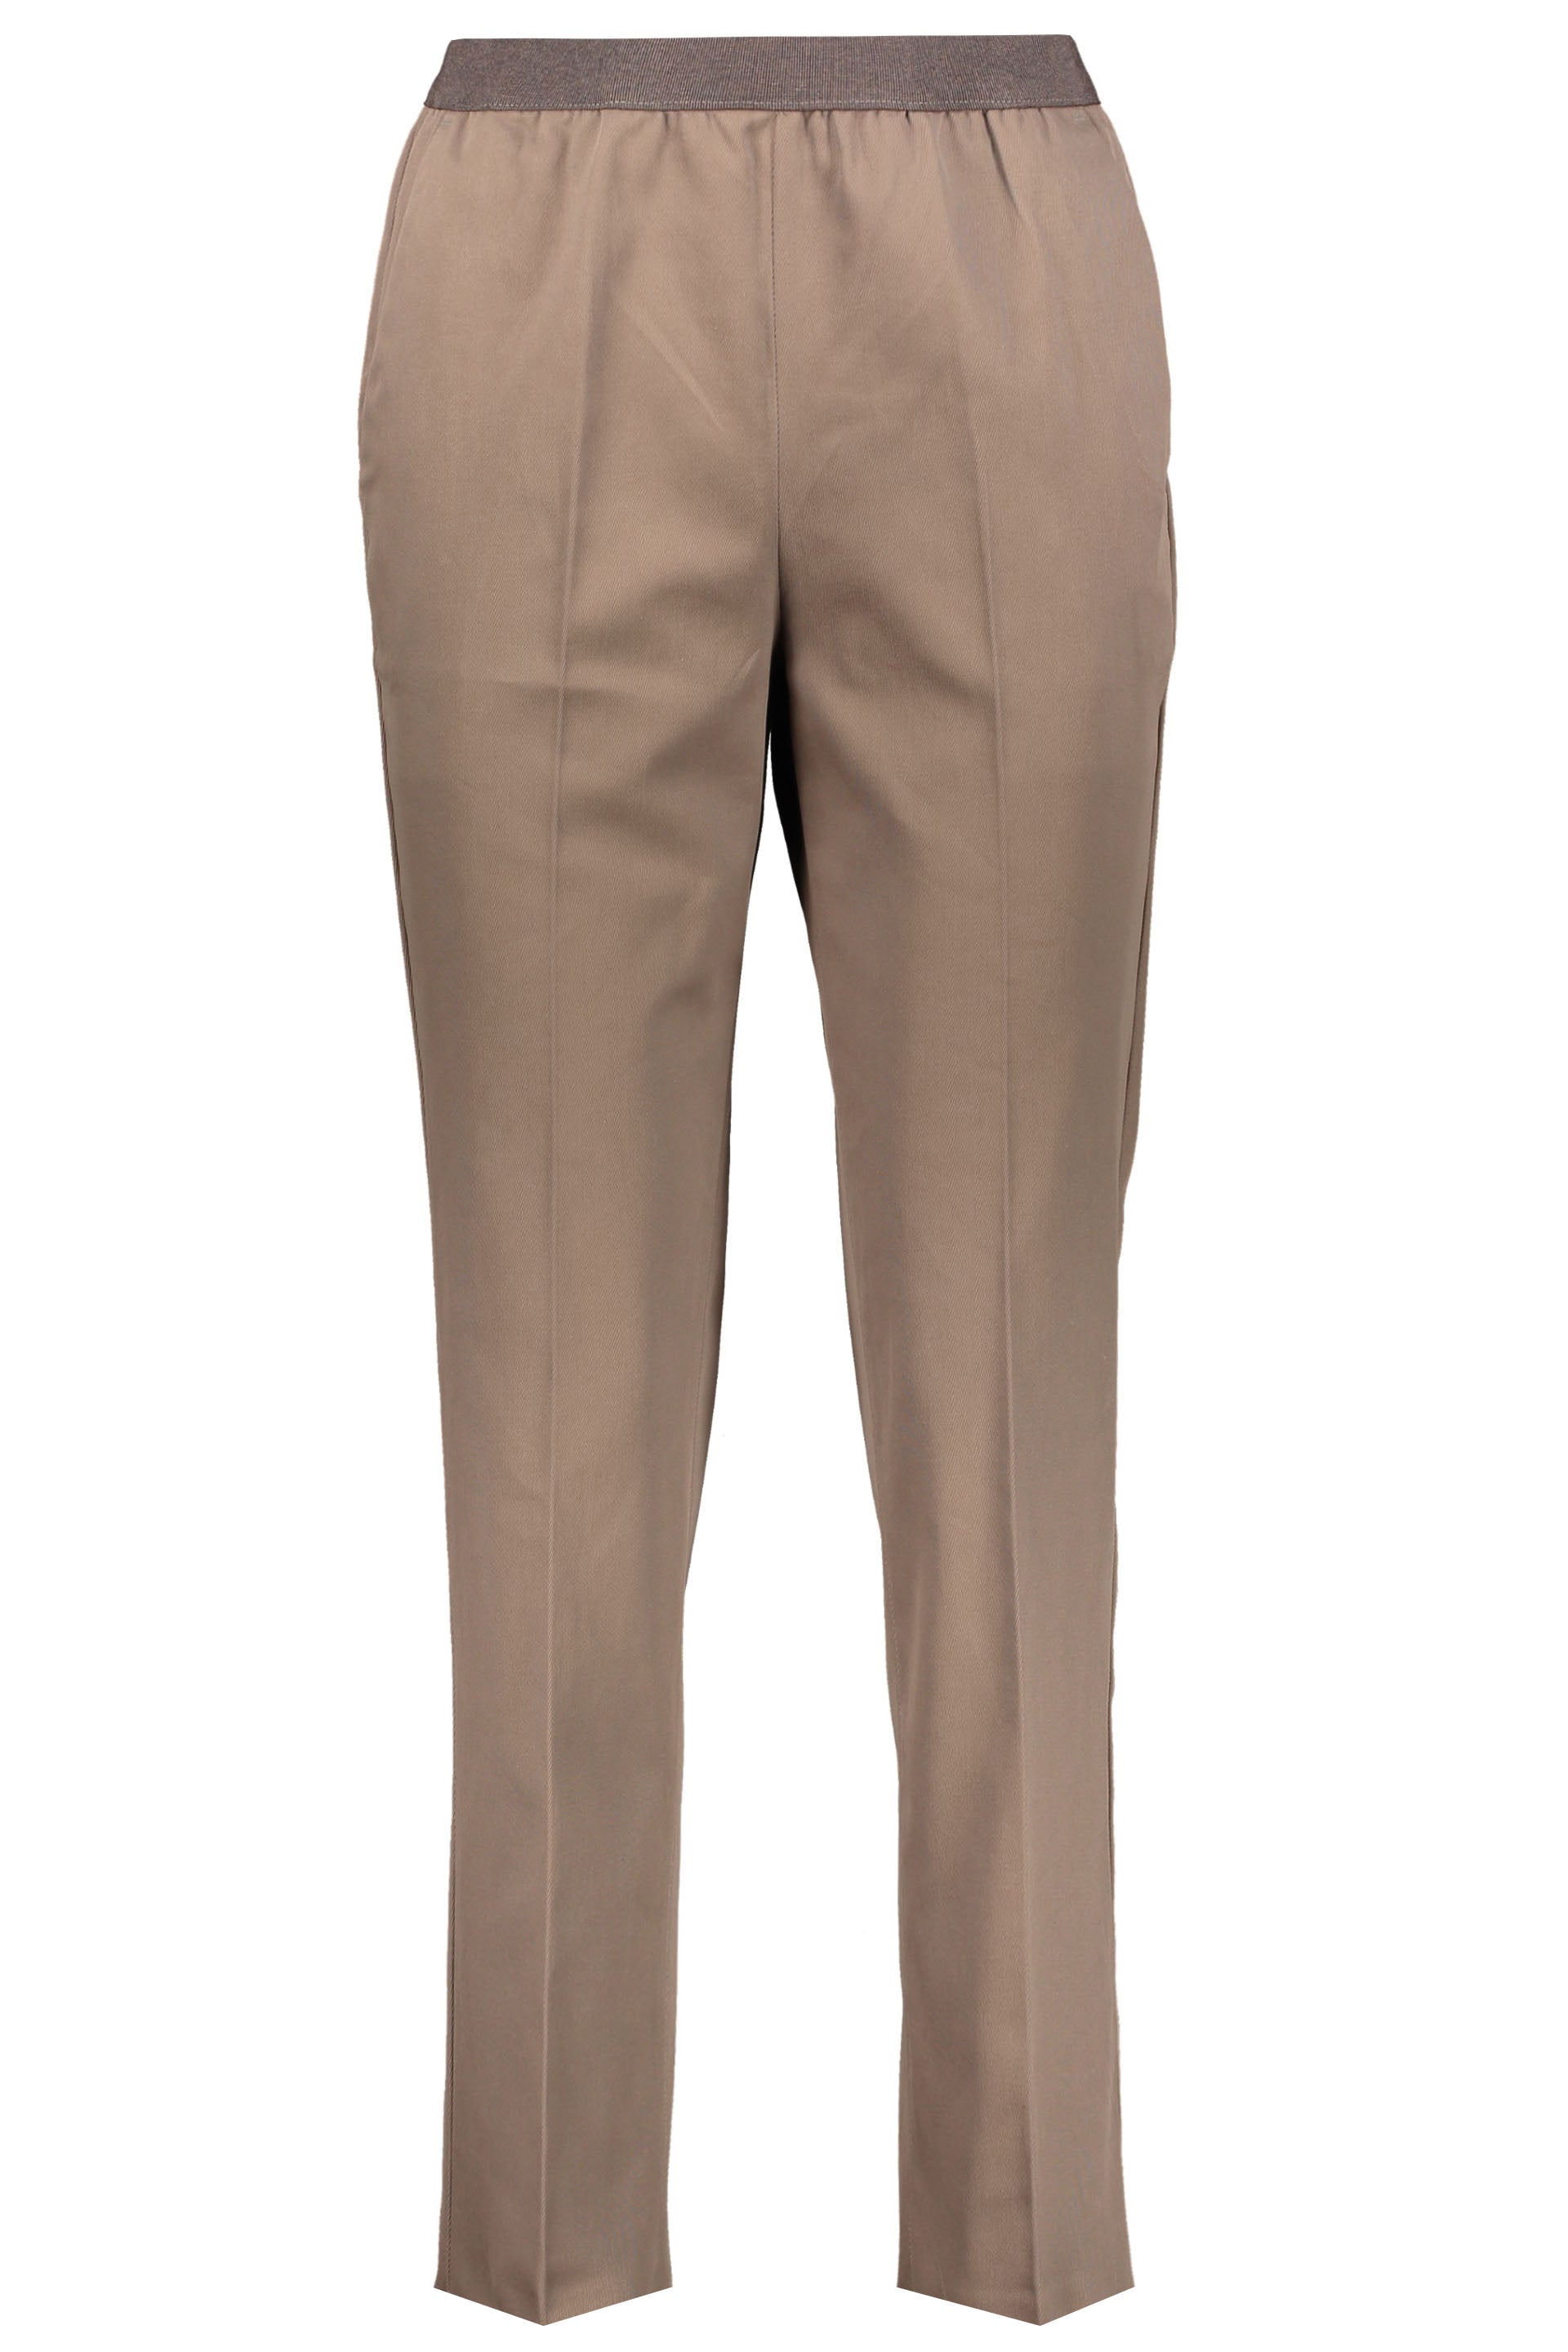 Agnona-OUTLET-SALE-Cotton-trousers-Hosen-38-ARCHIVE-COLLECTION.jpg